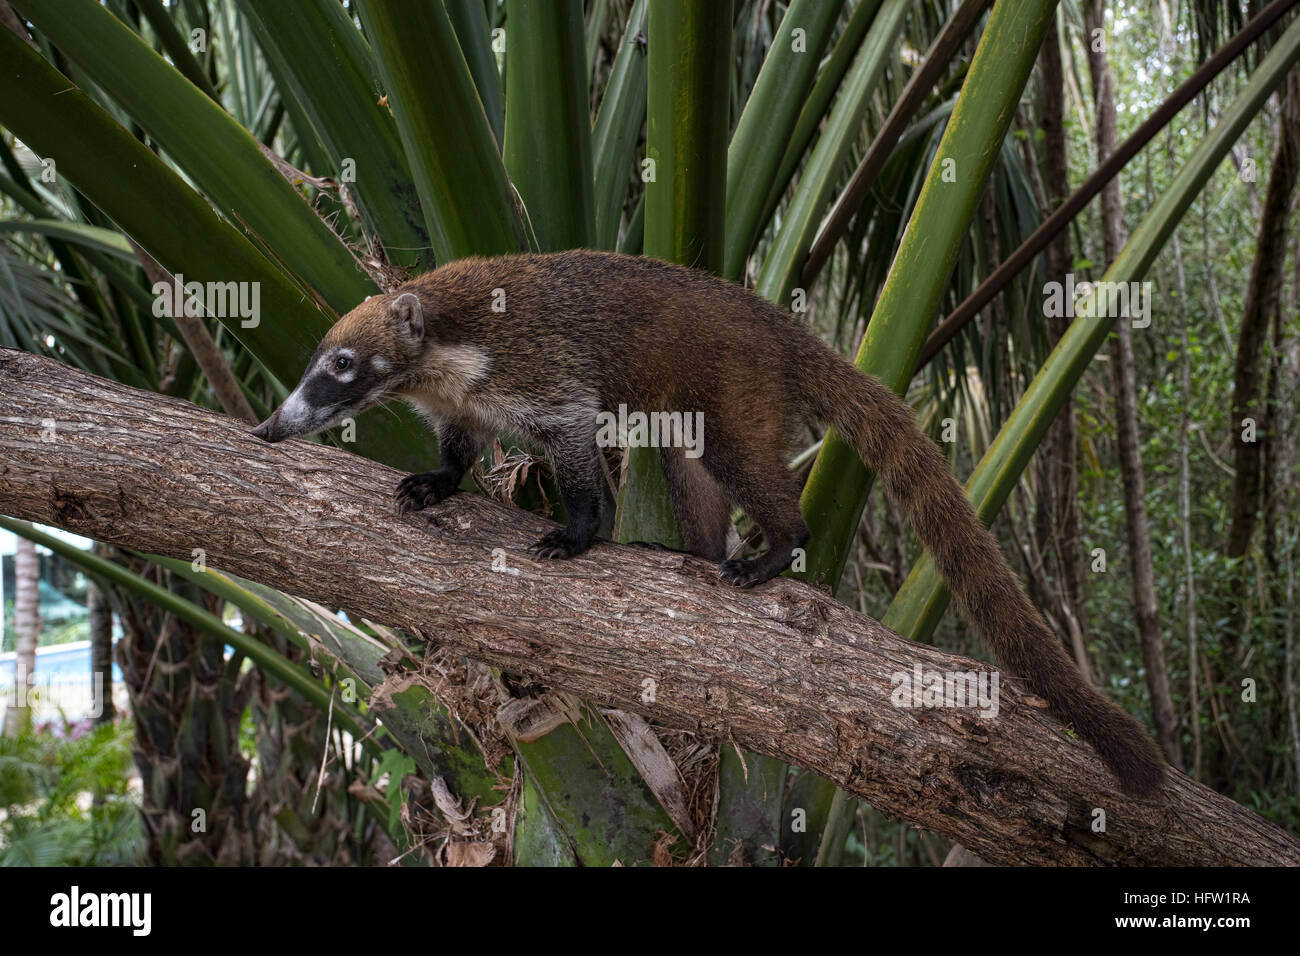 La faune de la jungle du Mexique Coati mundi de l'alimentation animale. Le Coati ou Coatimundi est faune animal, membre de la famille raton laveur. Banque D'Images